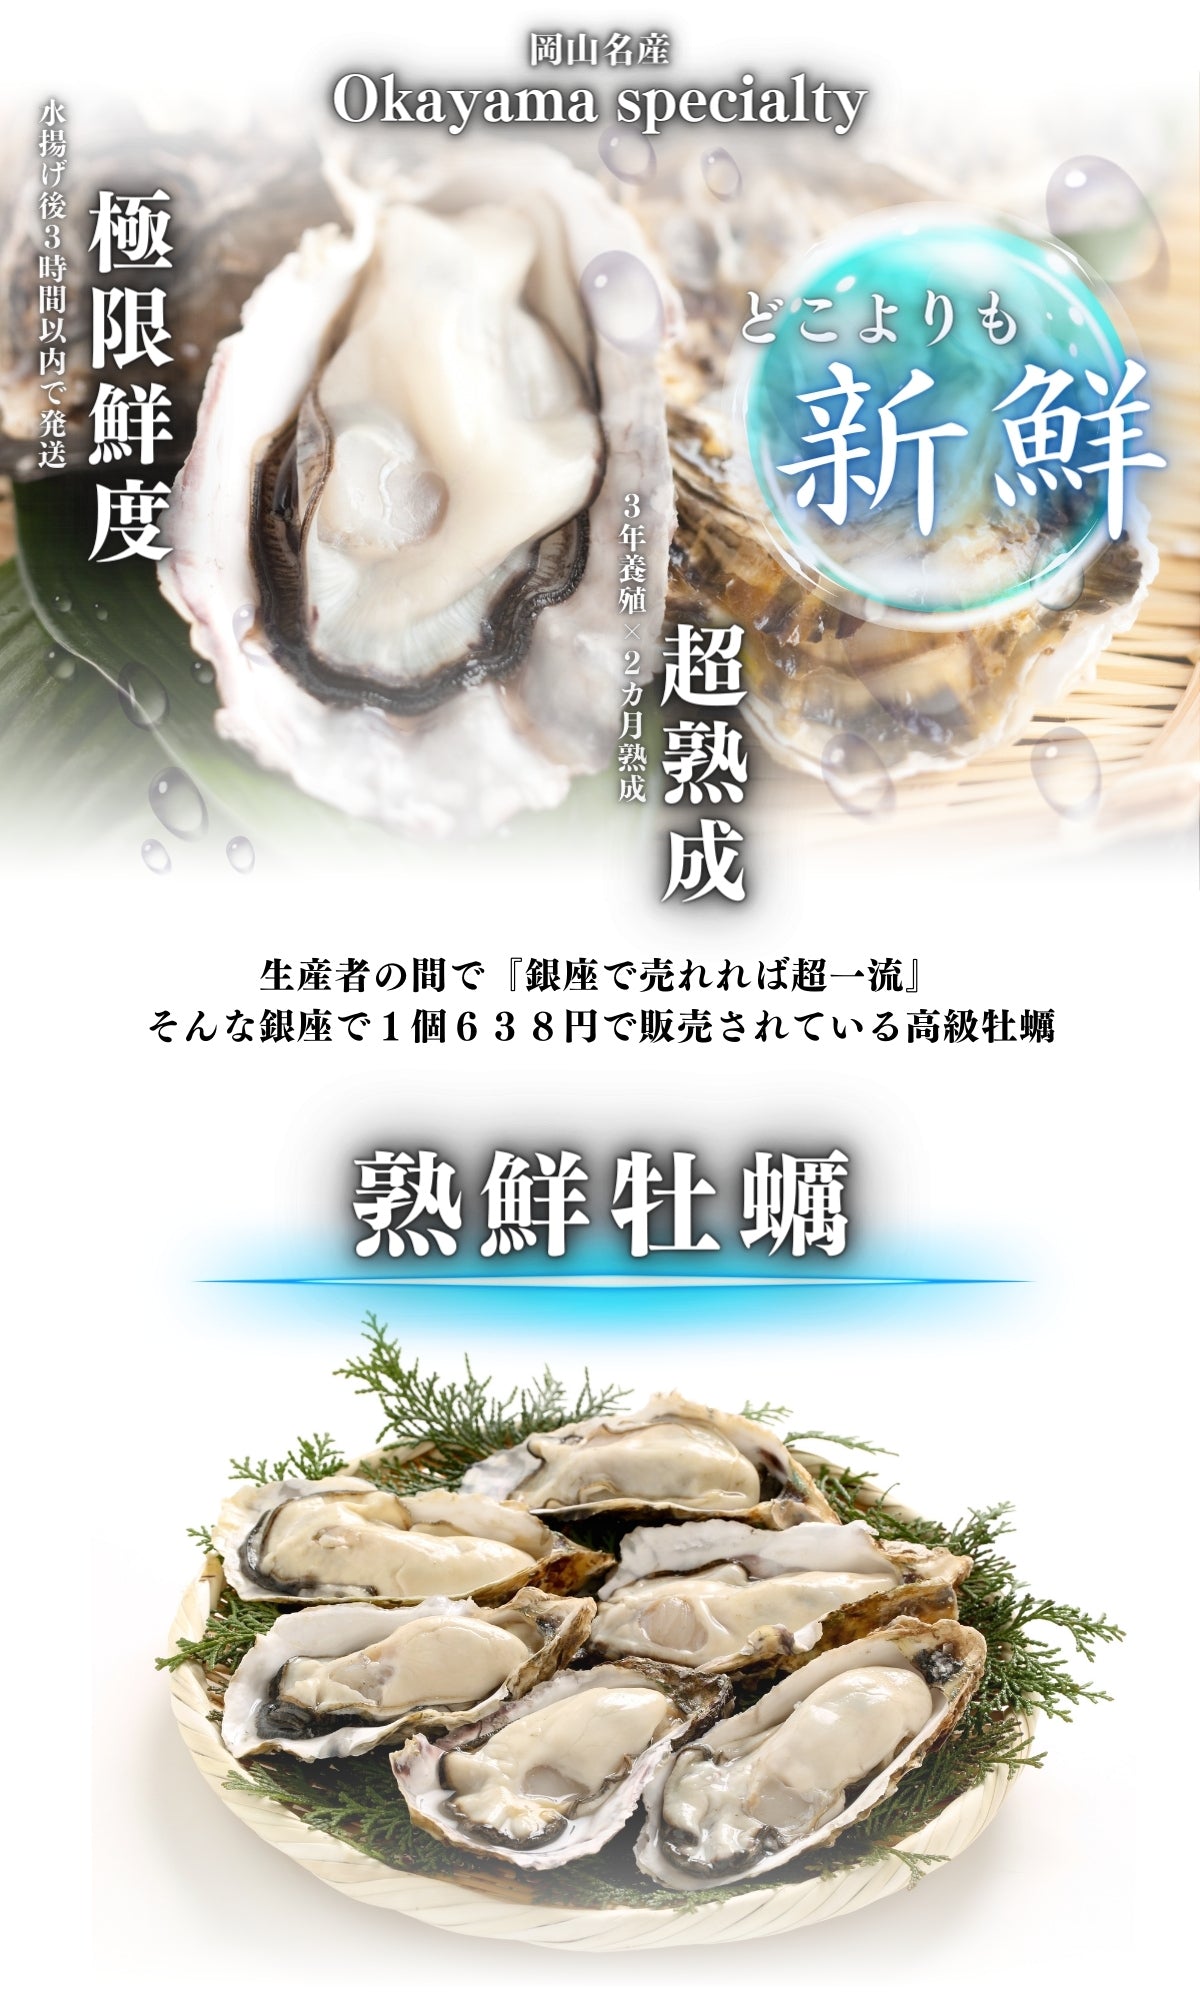 熟鮮牡蠣 どこよりも新鮮を追及 極限鮮度 超熟成